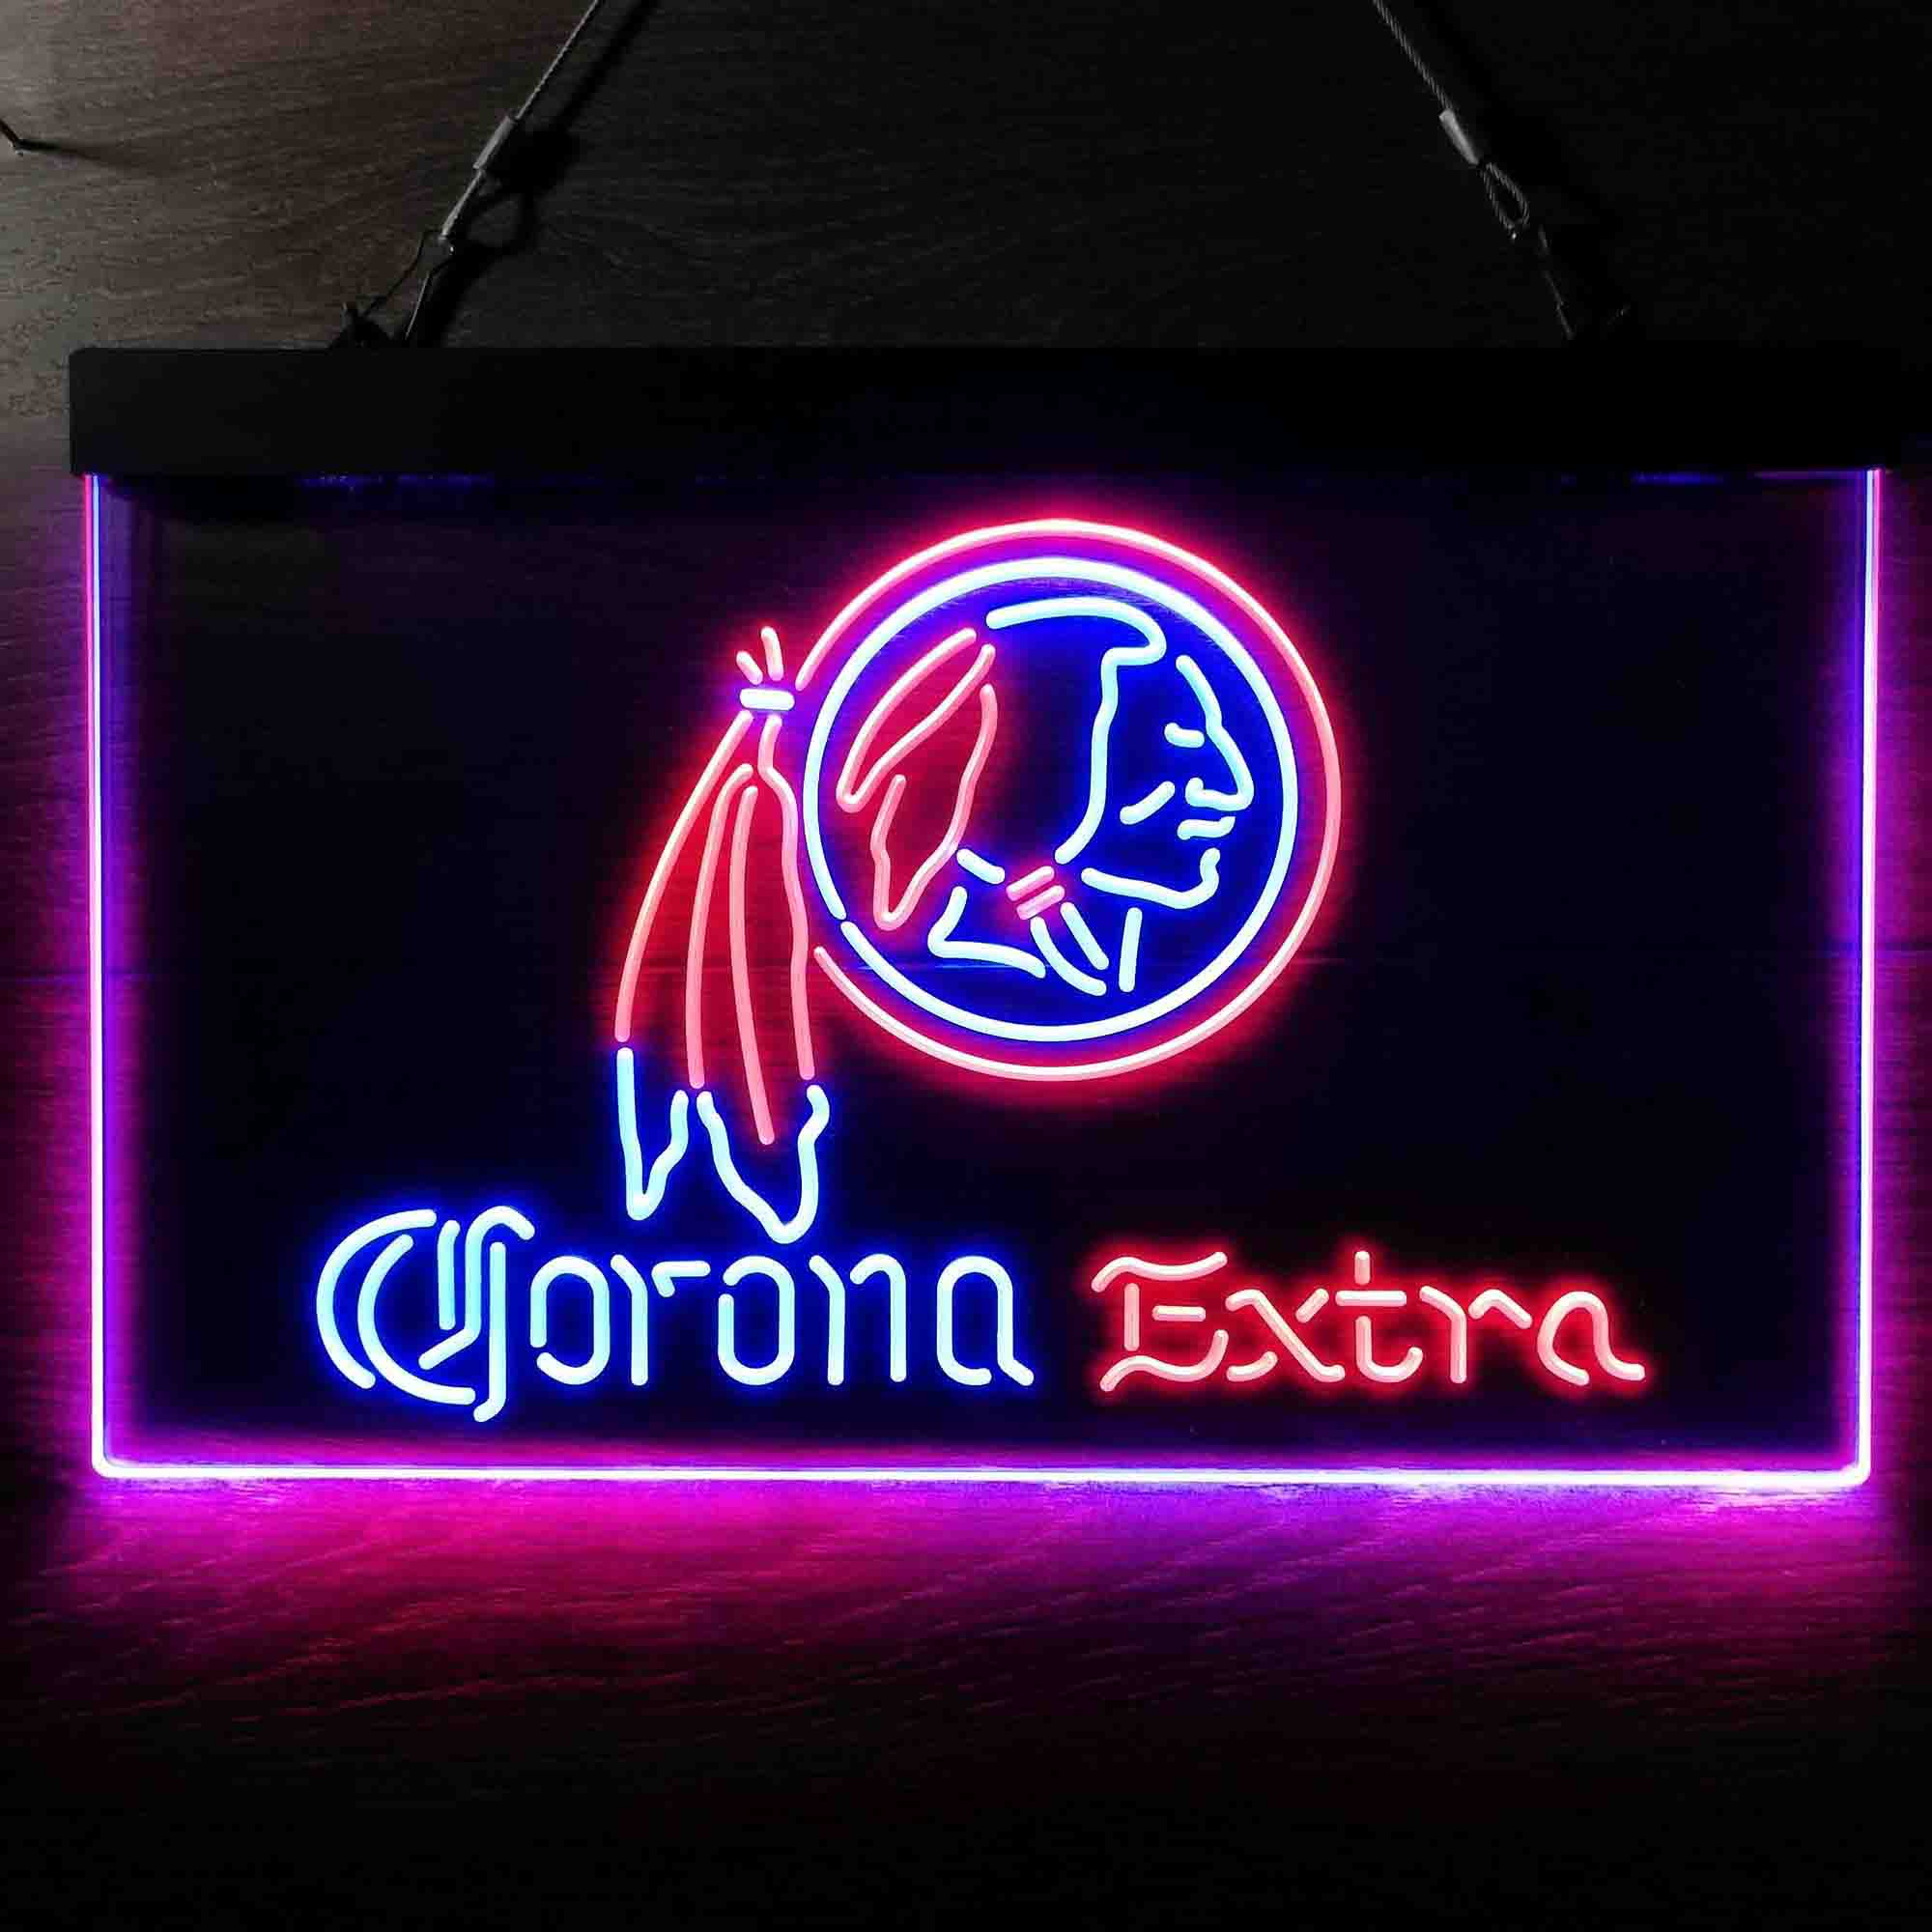 Corona Extra Bar Washington Est. 1932 Neon LED Sign